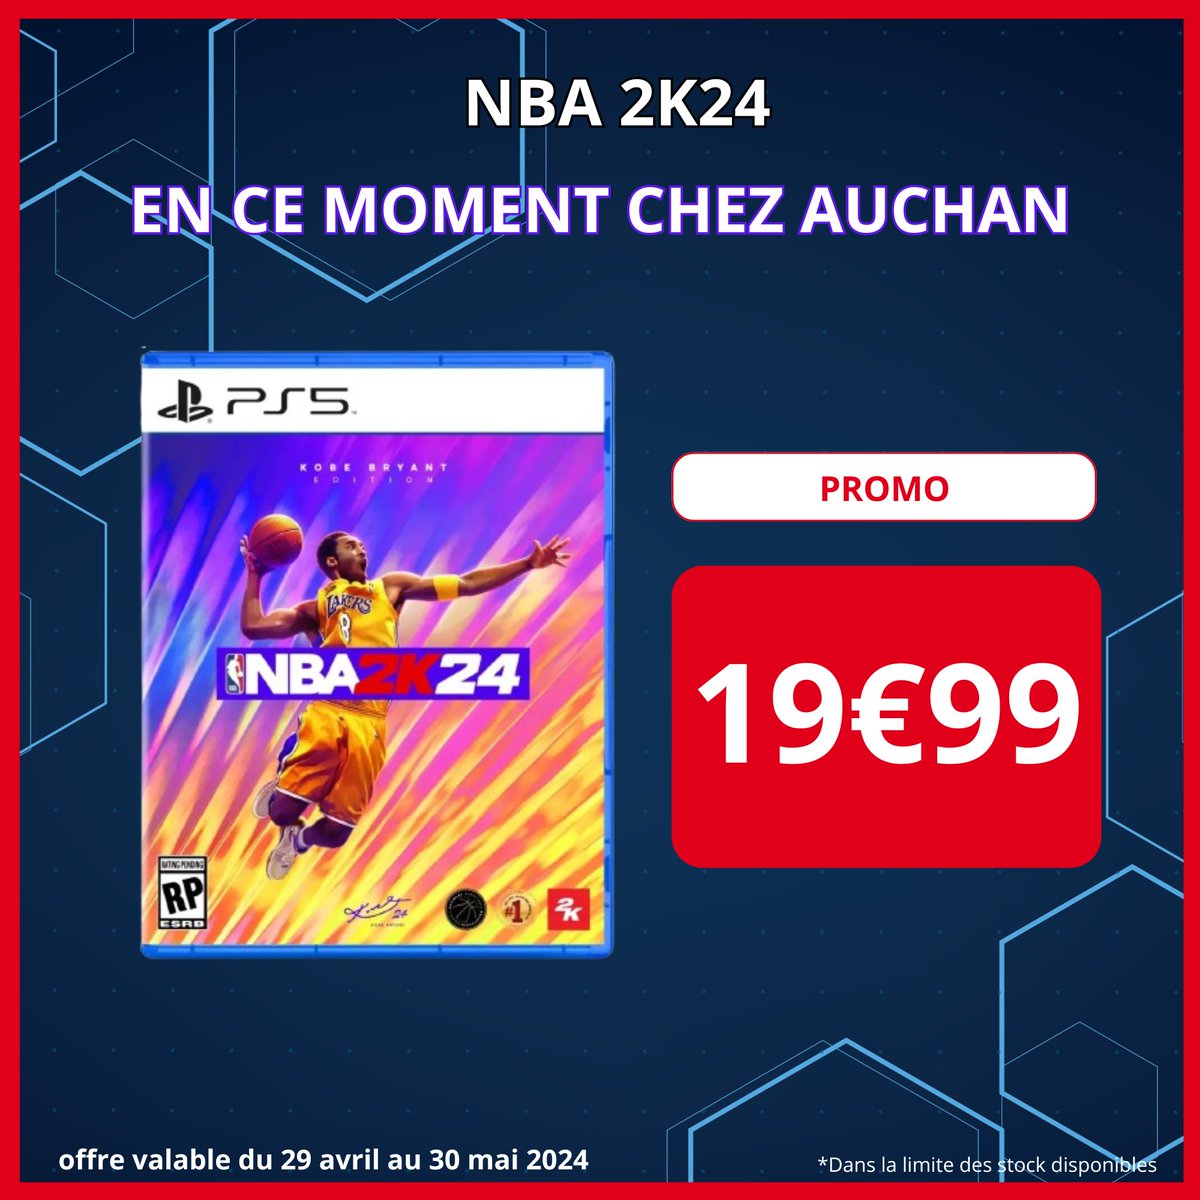 Envie de vivre l'intensité des Play-offs avec NBA2K24 ? Il est disponible à 19,99 € chez Auchan sur PS5 / XBOX SERIES ! 🎮 Également disponible à 12,99 € sur PS4 et Nintendo Switch.🎮